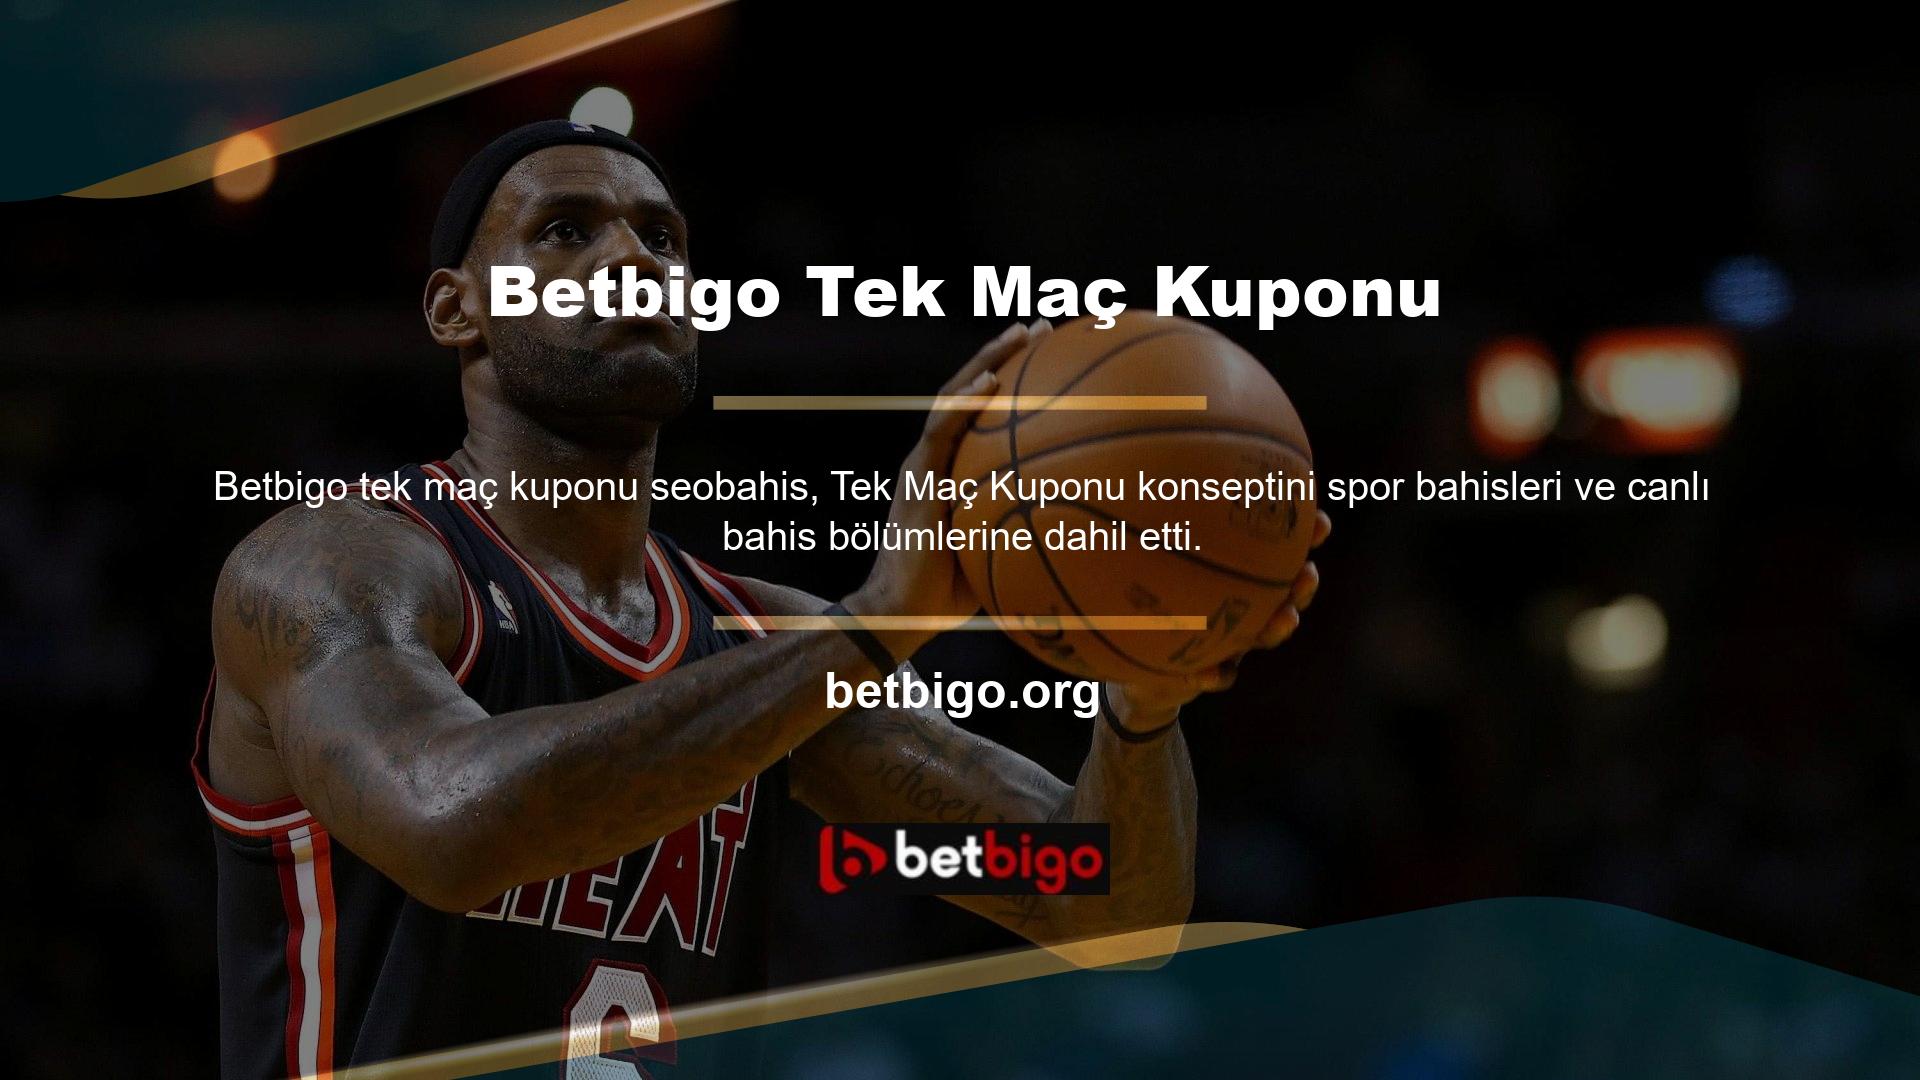 Tek Oyun Kuponu özelliği, Betbigo web sitesi bahis hizmetinde görüntülenen tüm oyunlar için mevcuttur